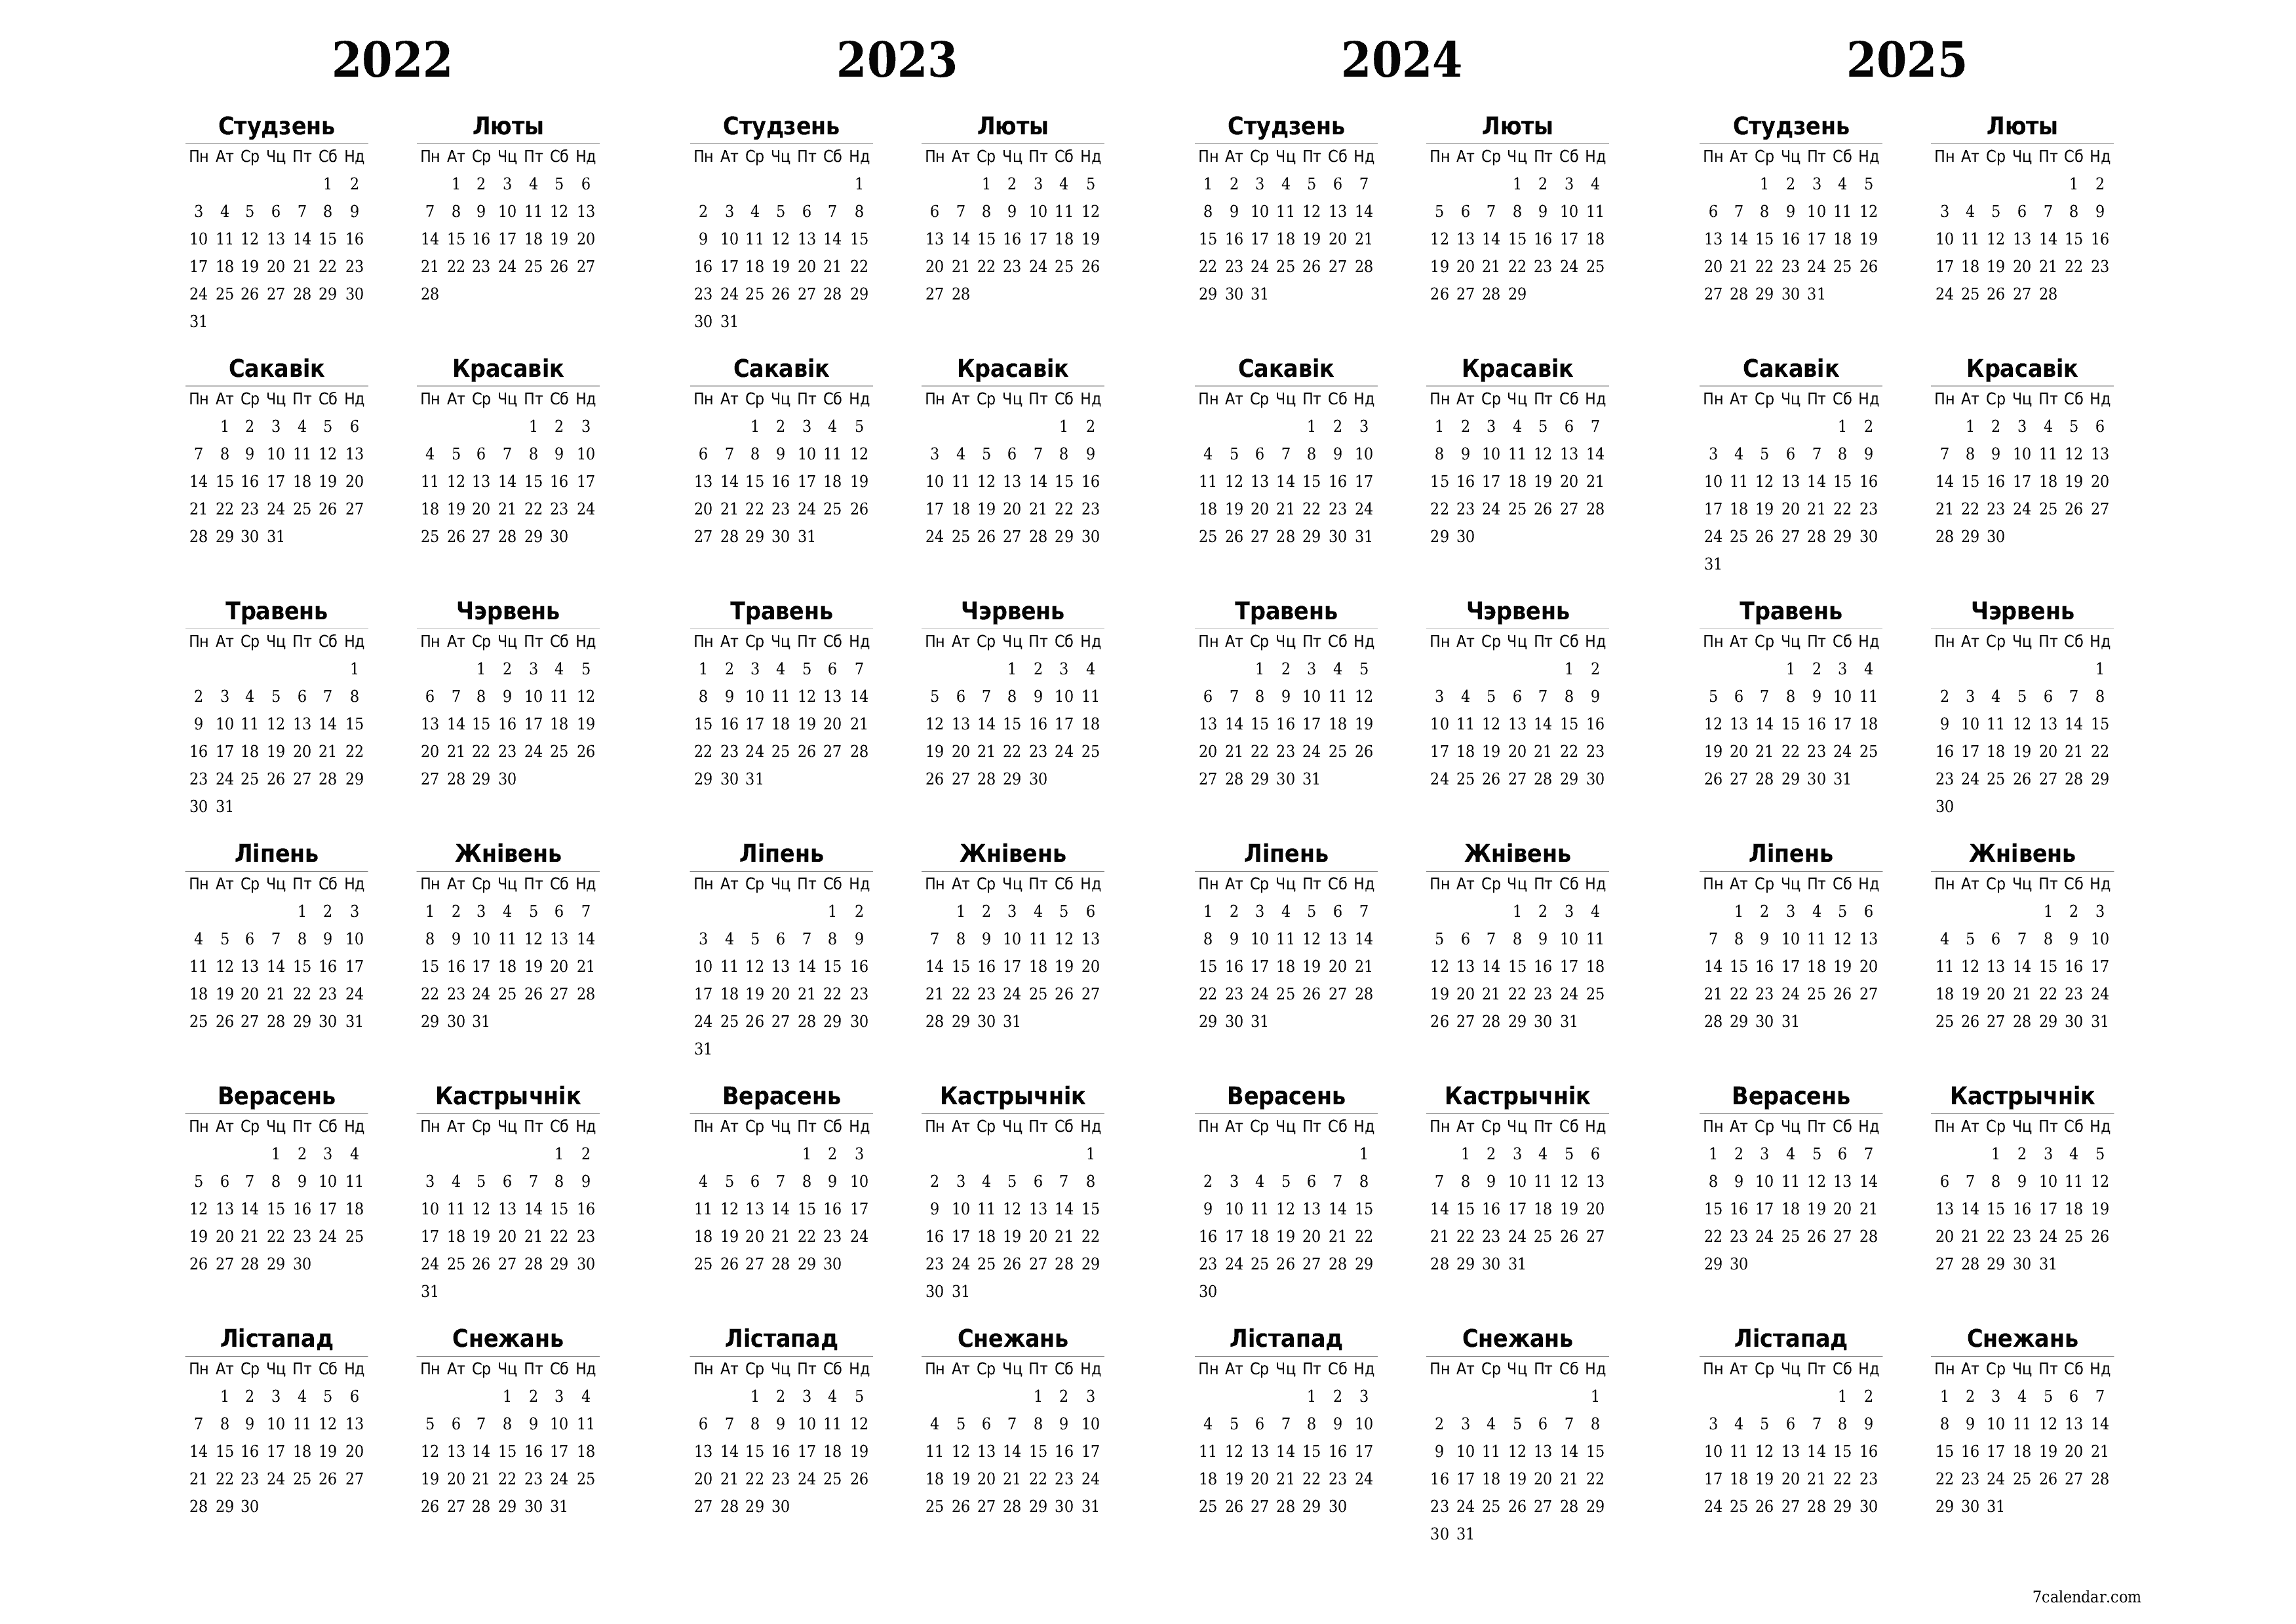  для друку насценны шаблон календара бясплатны гарызантальны Штогадовы каляндар Верасень (Вер) 2022